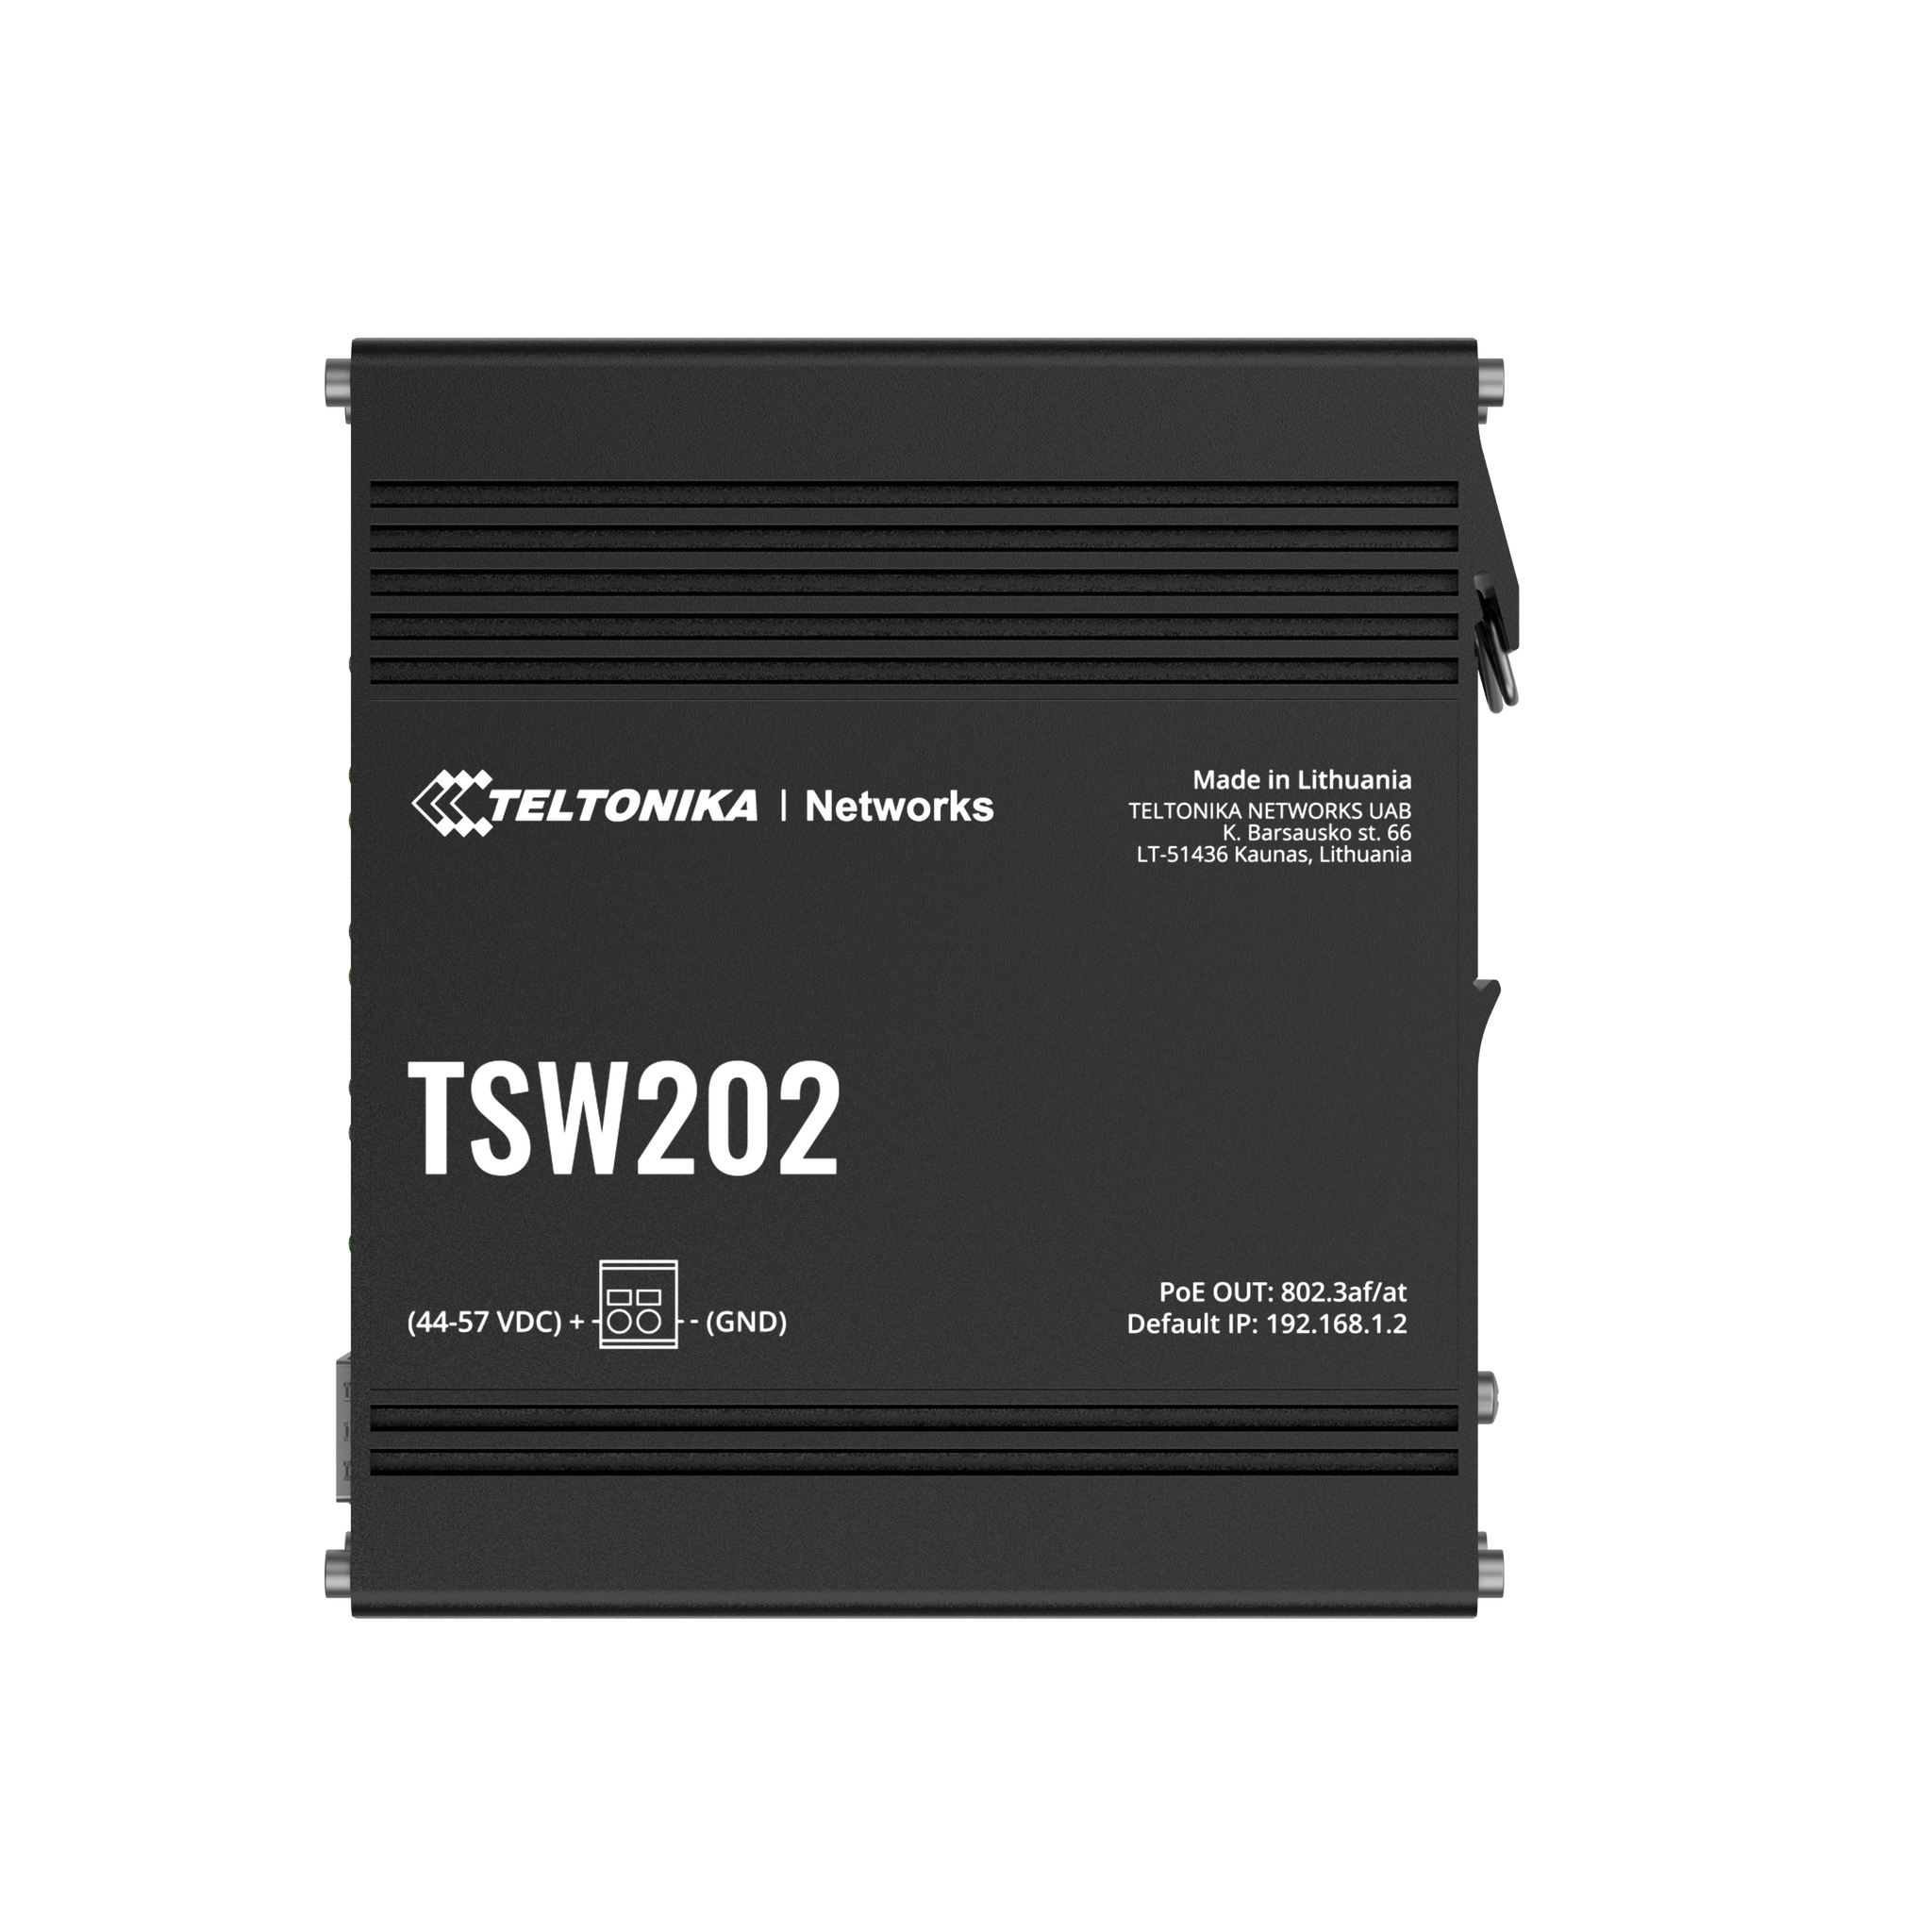 Teltonika TSW202 PoE+ managed Ethernet Switch